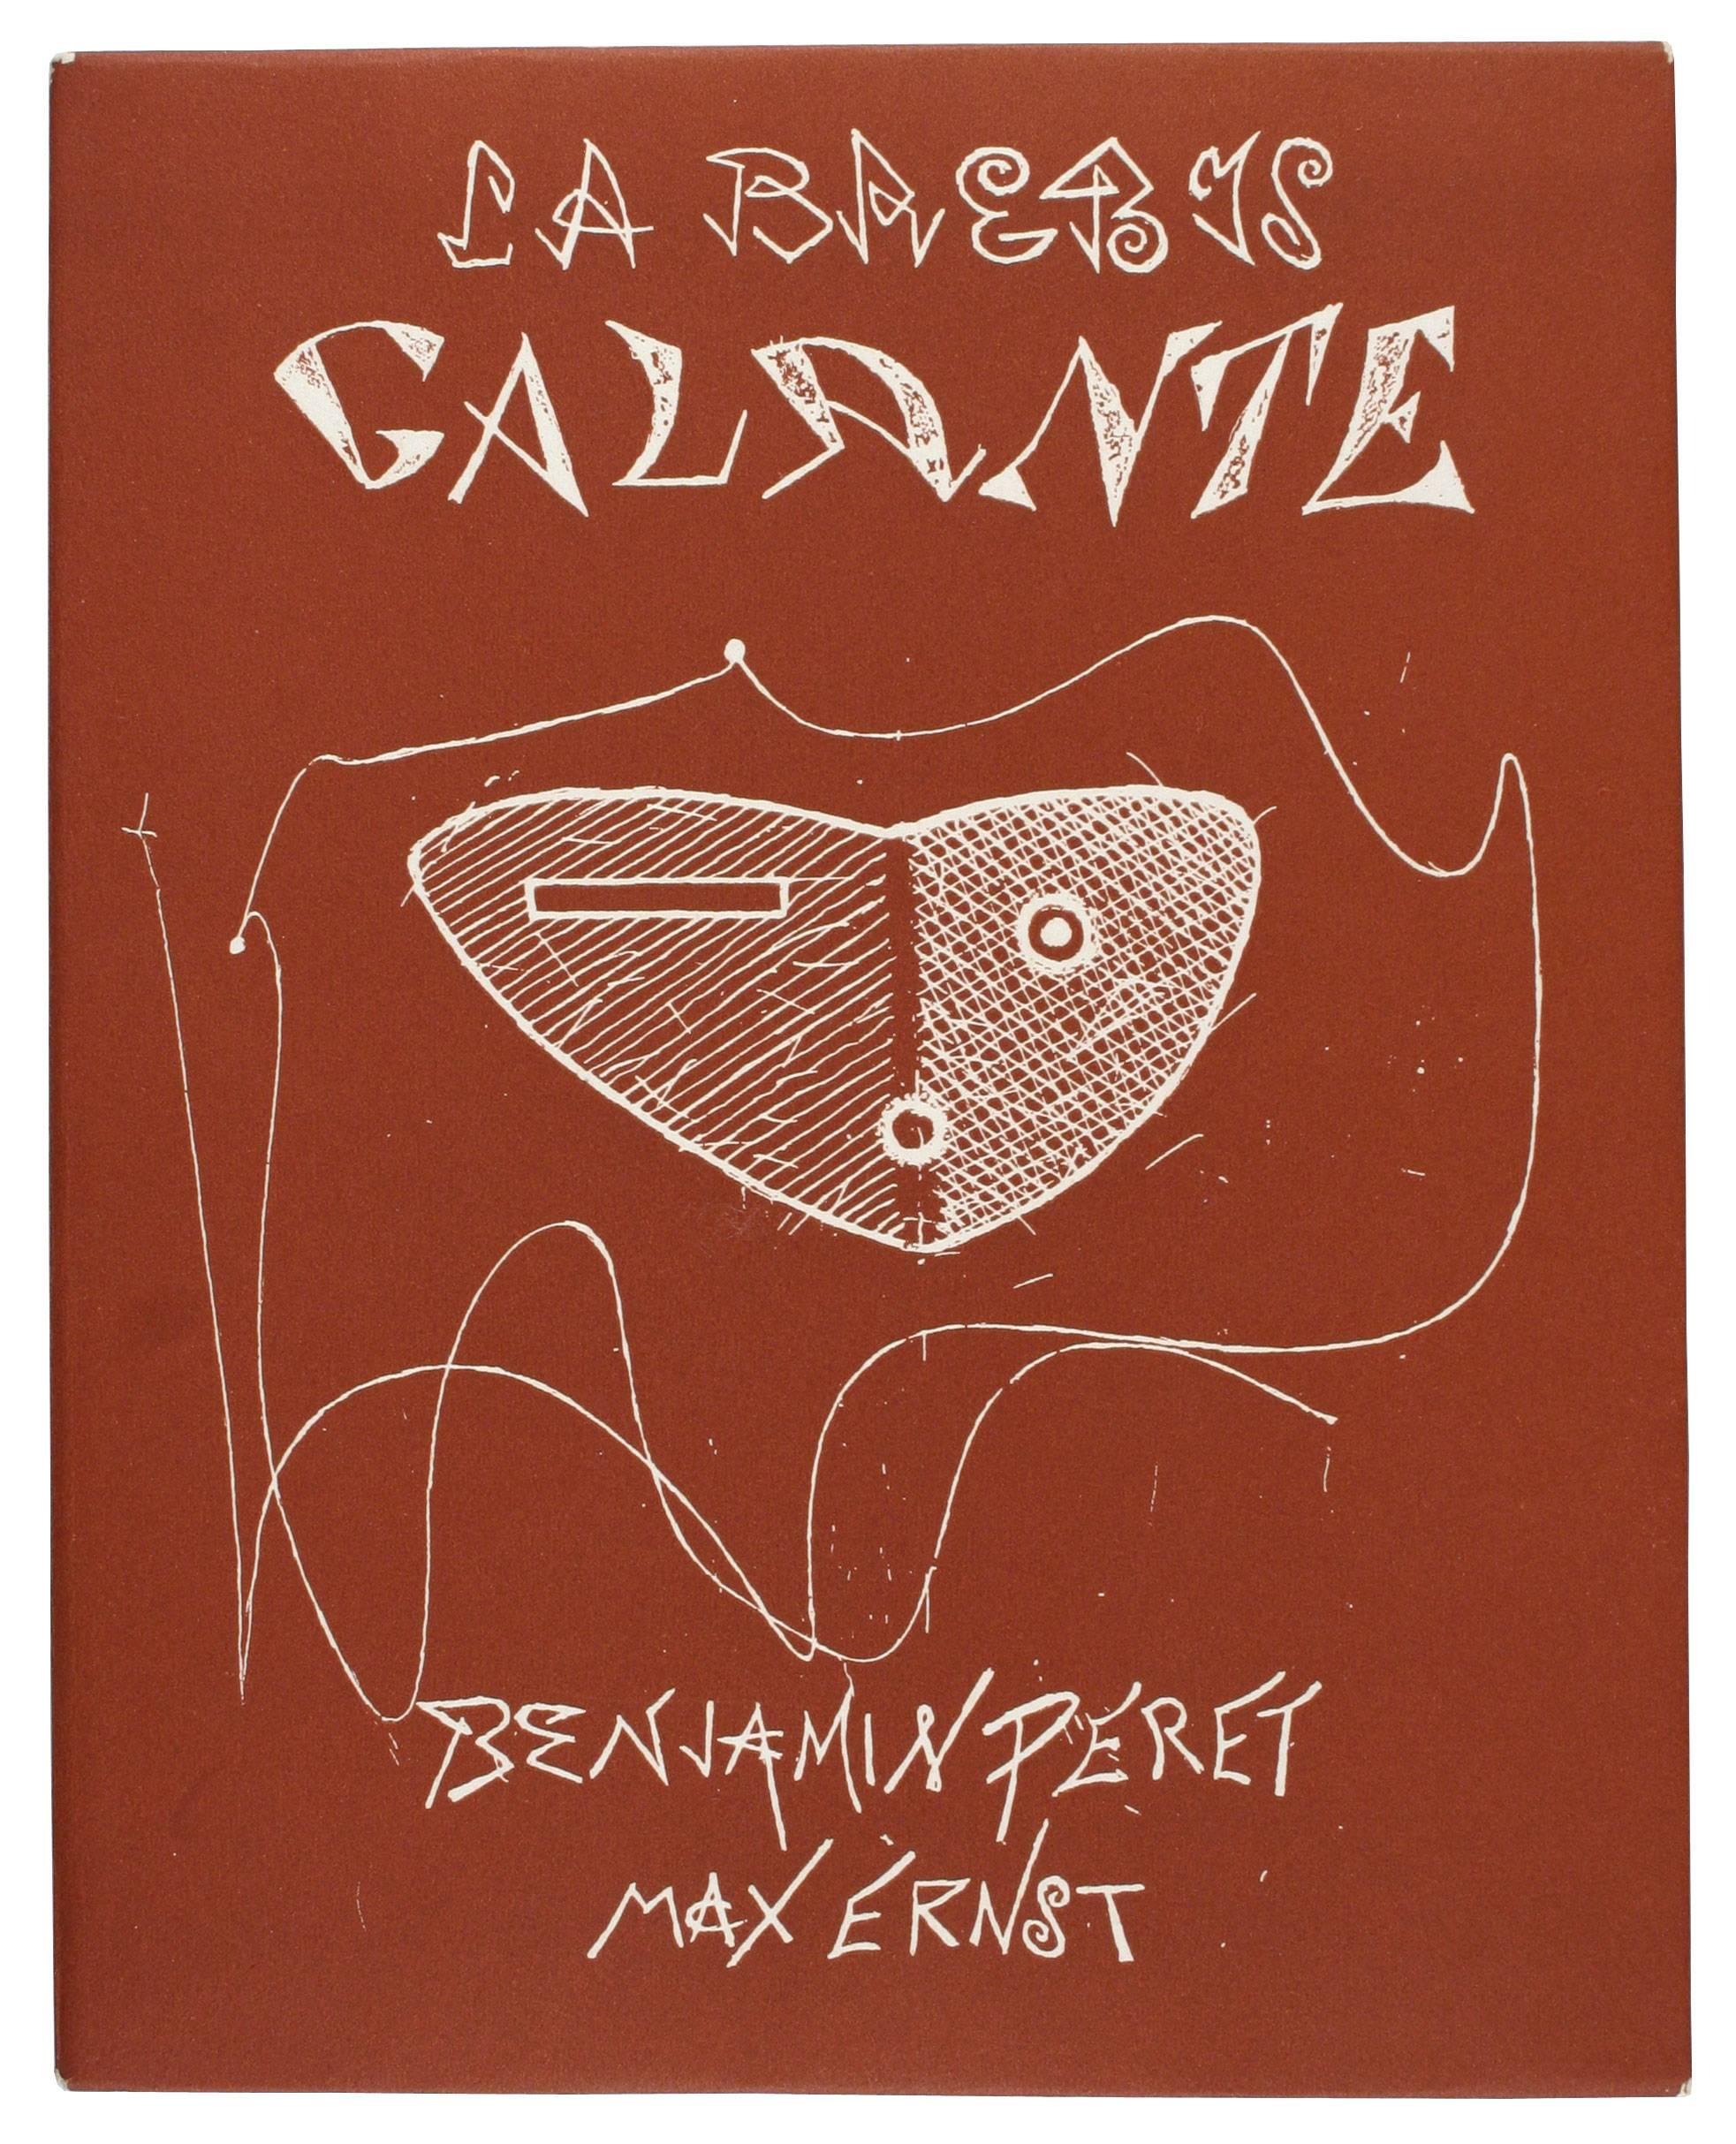 ERNST, Max. La Brebis Galante. - Art by Max Ernst